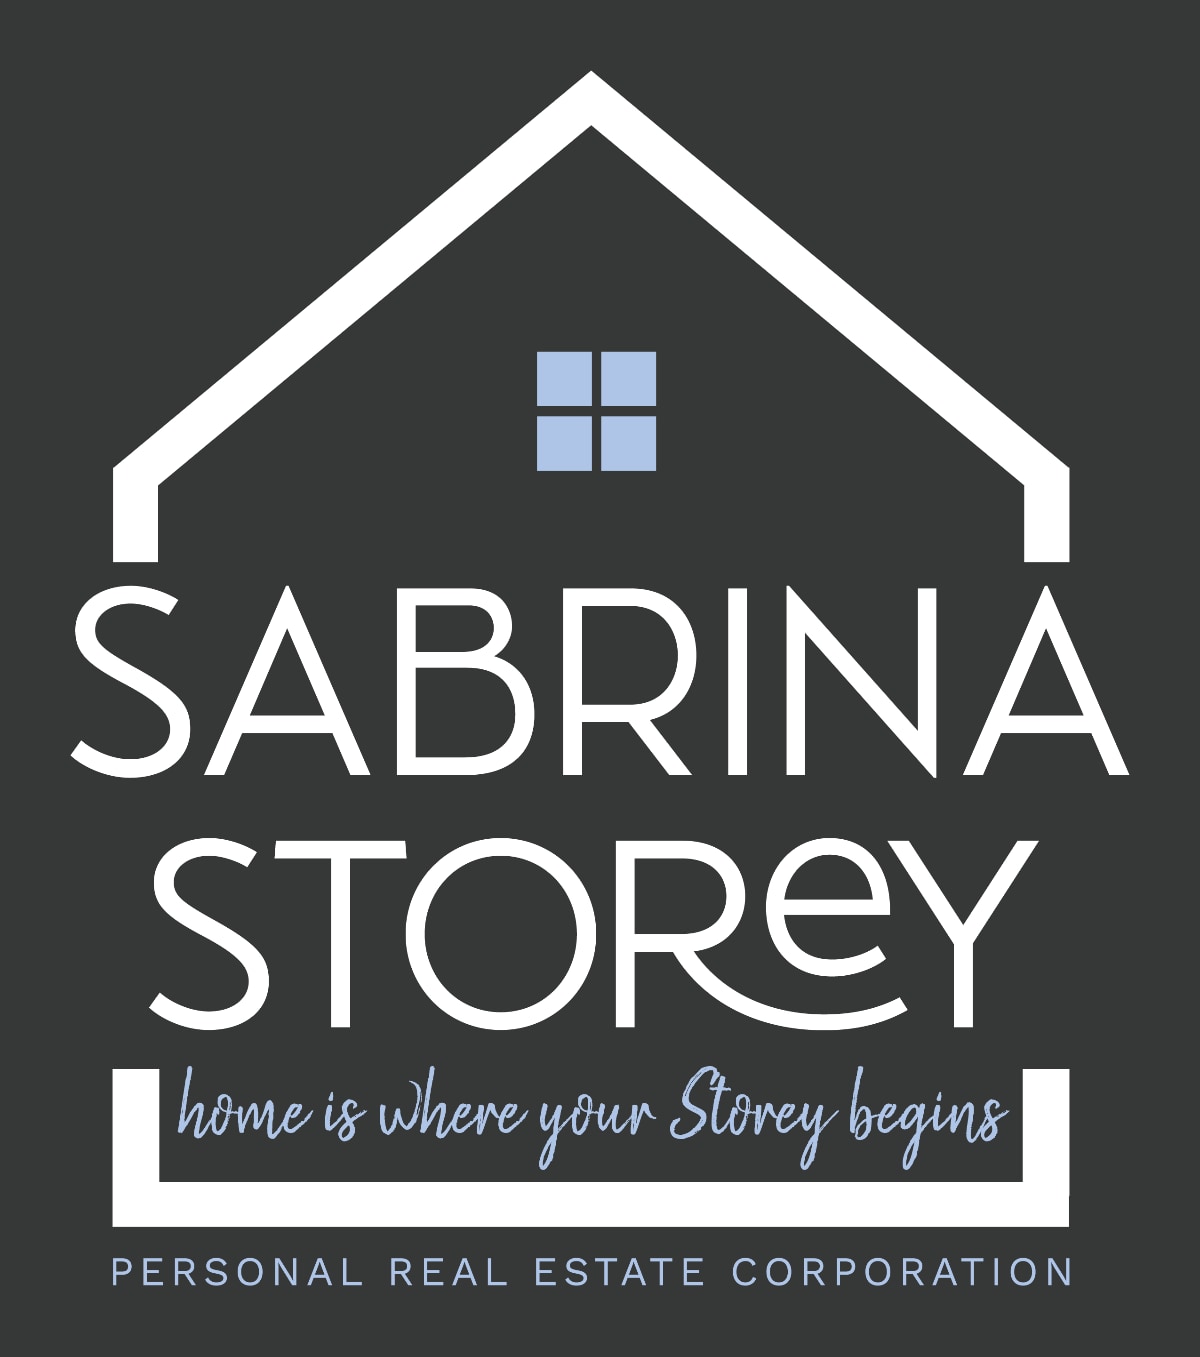 Sabrina storey